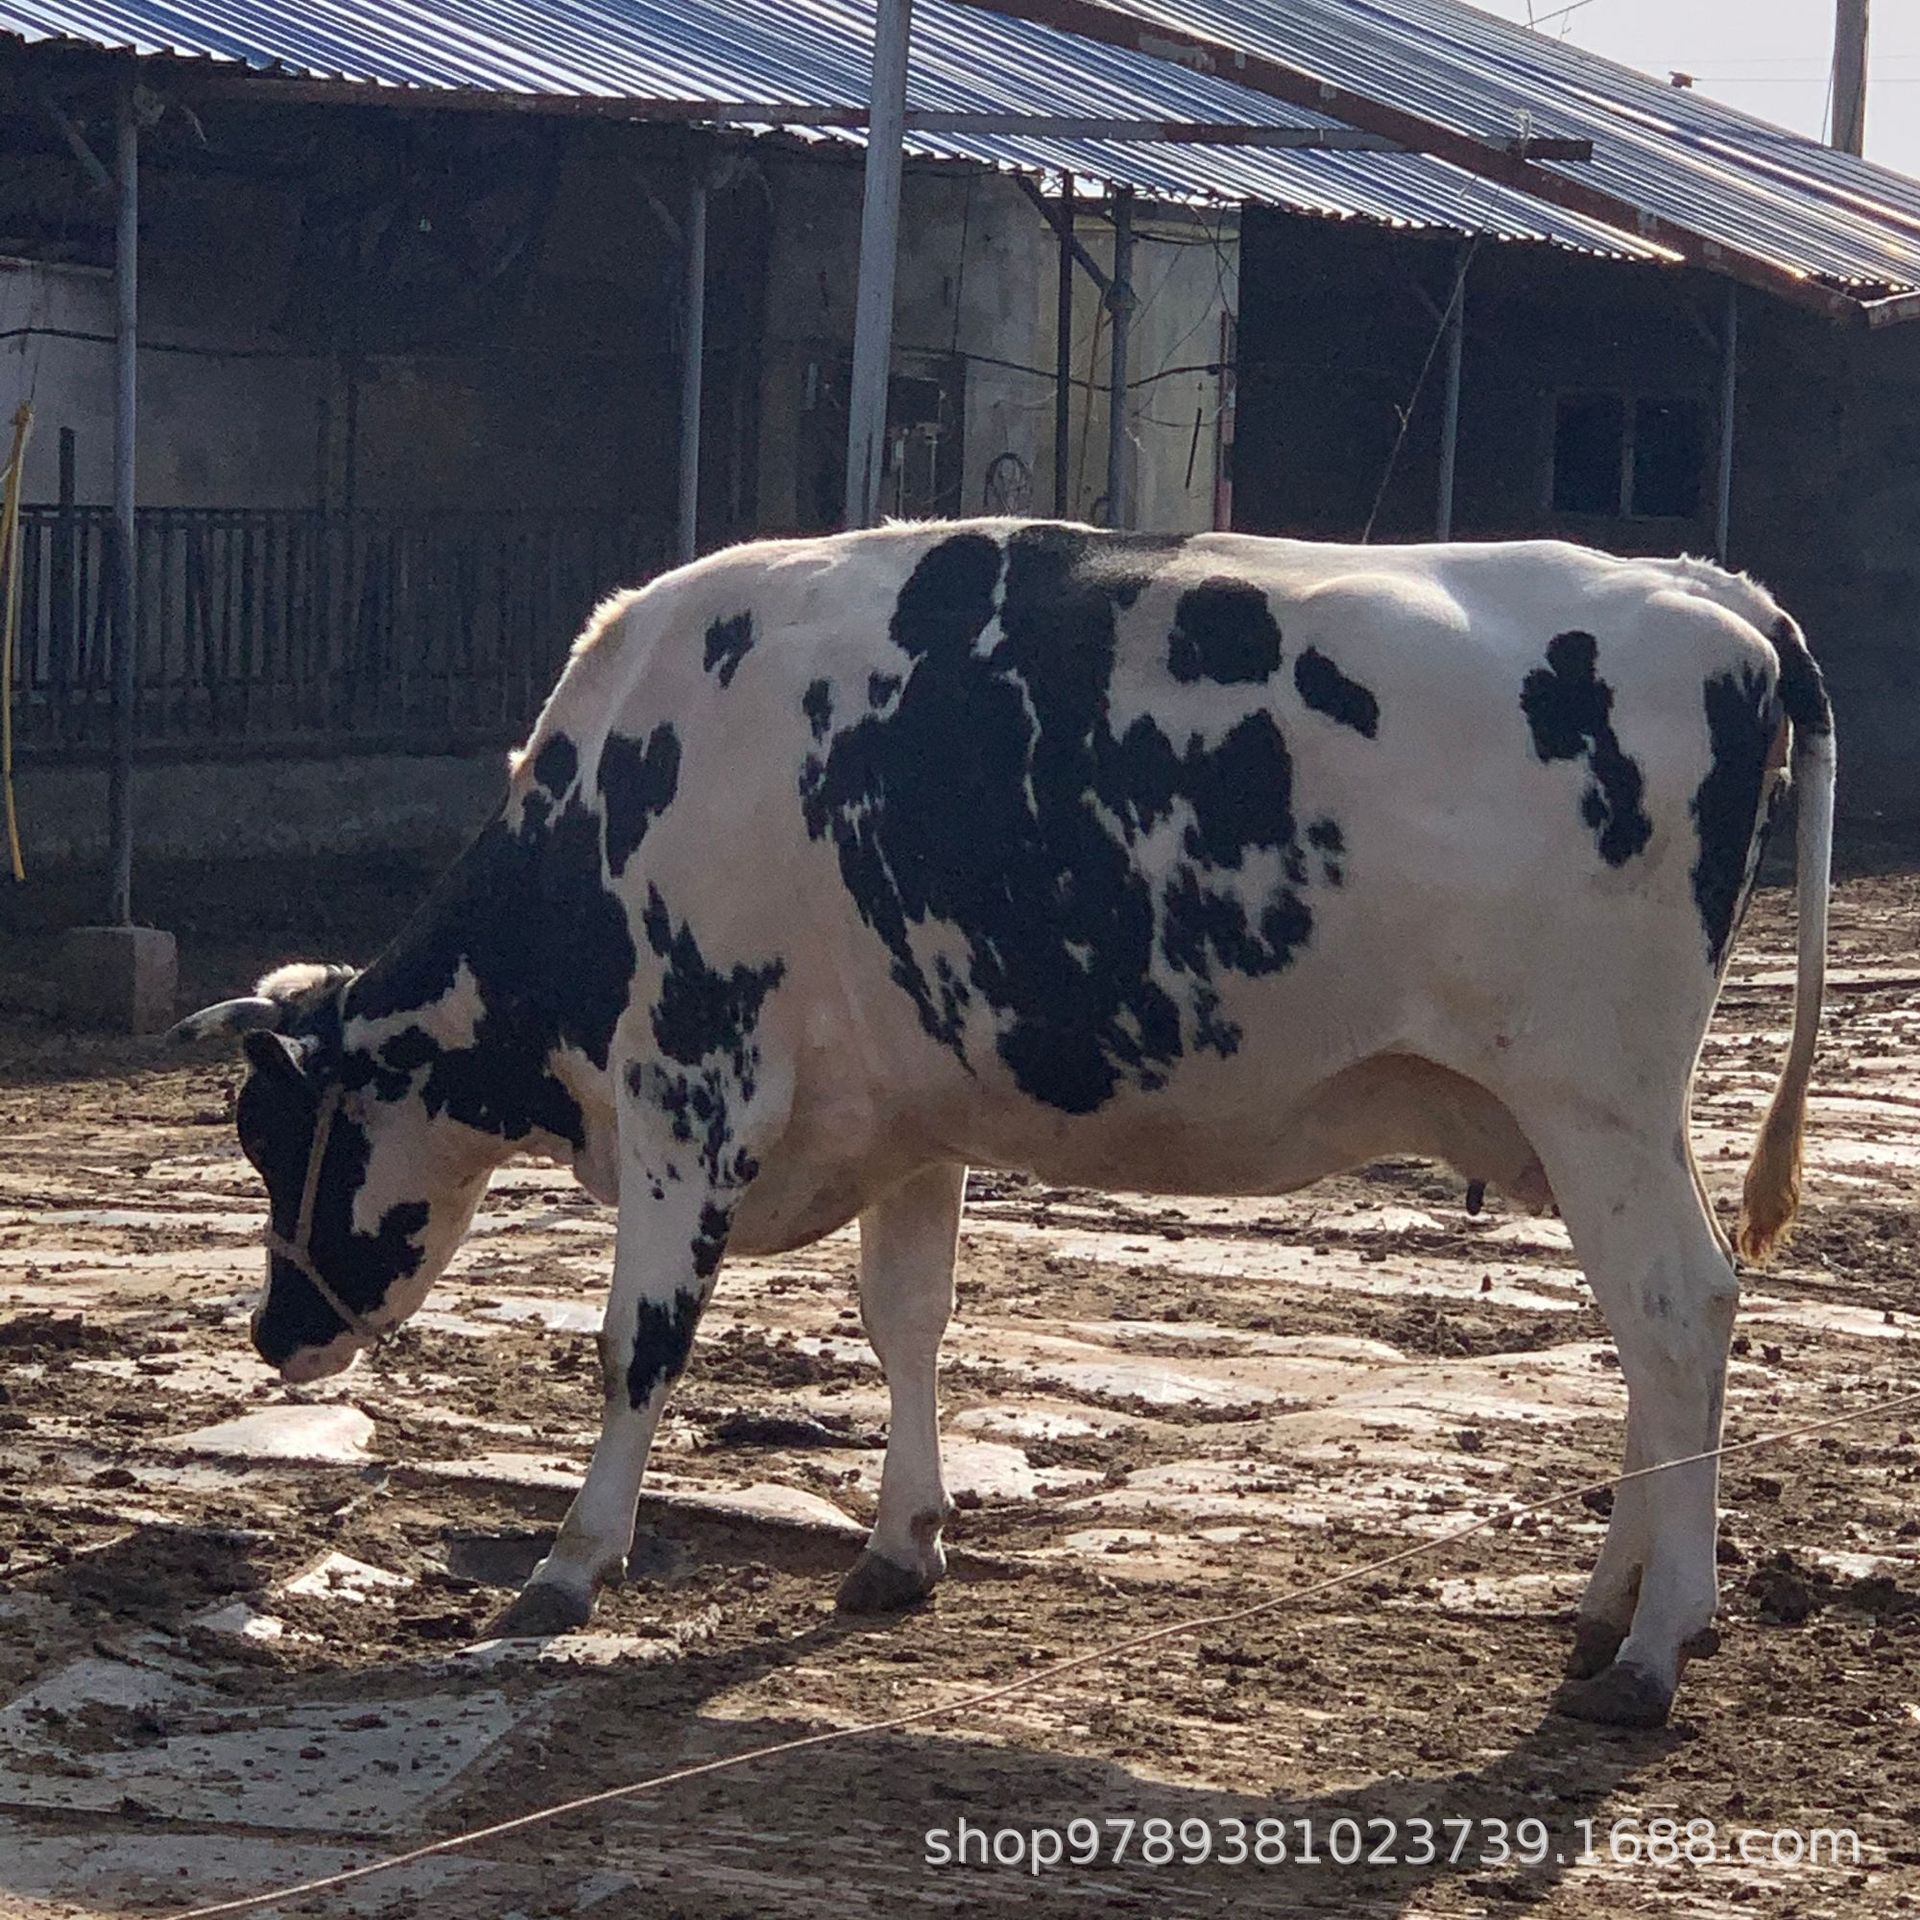 哪里有卖奶牛的高产奶牛牛犊产奶的牛产奶量高奶牛养殖场